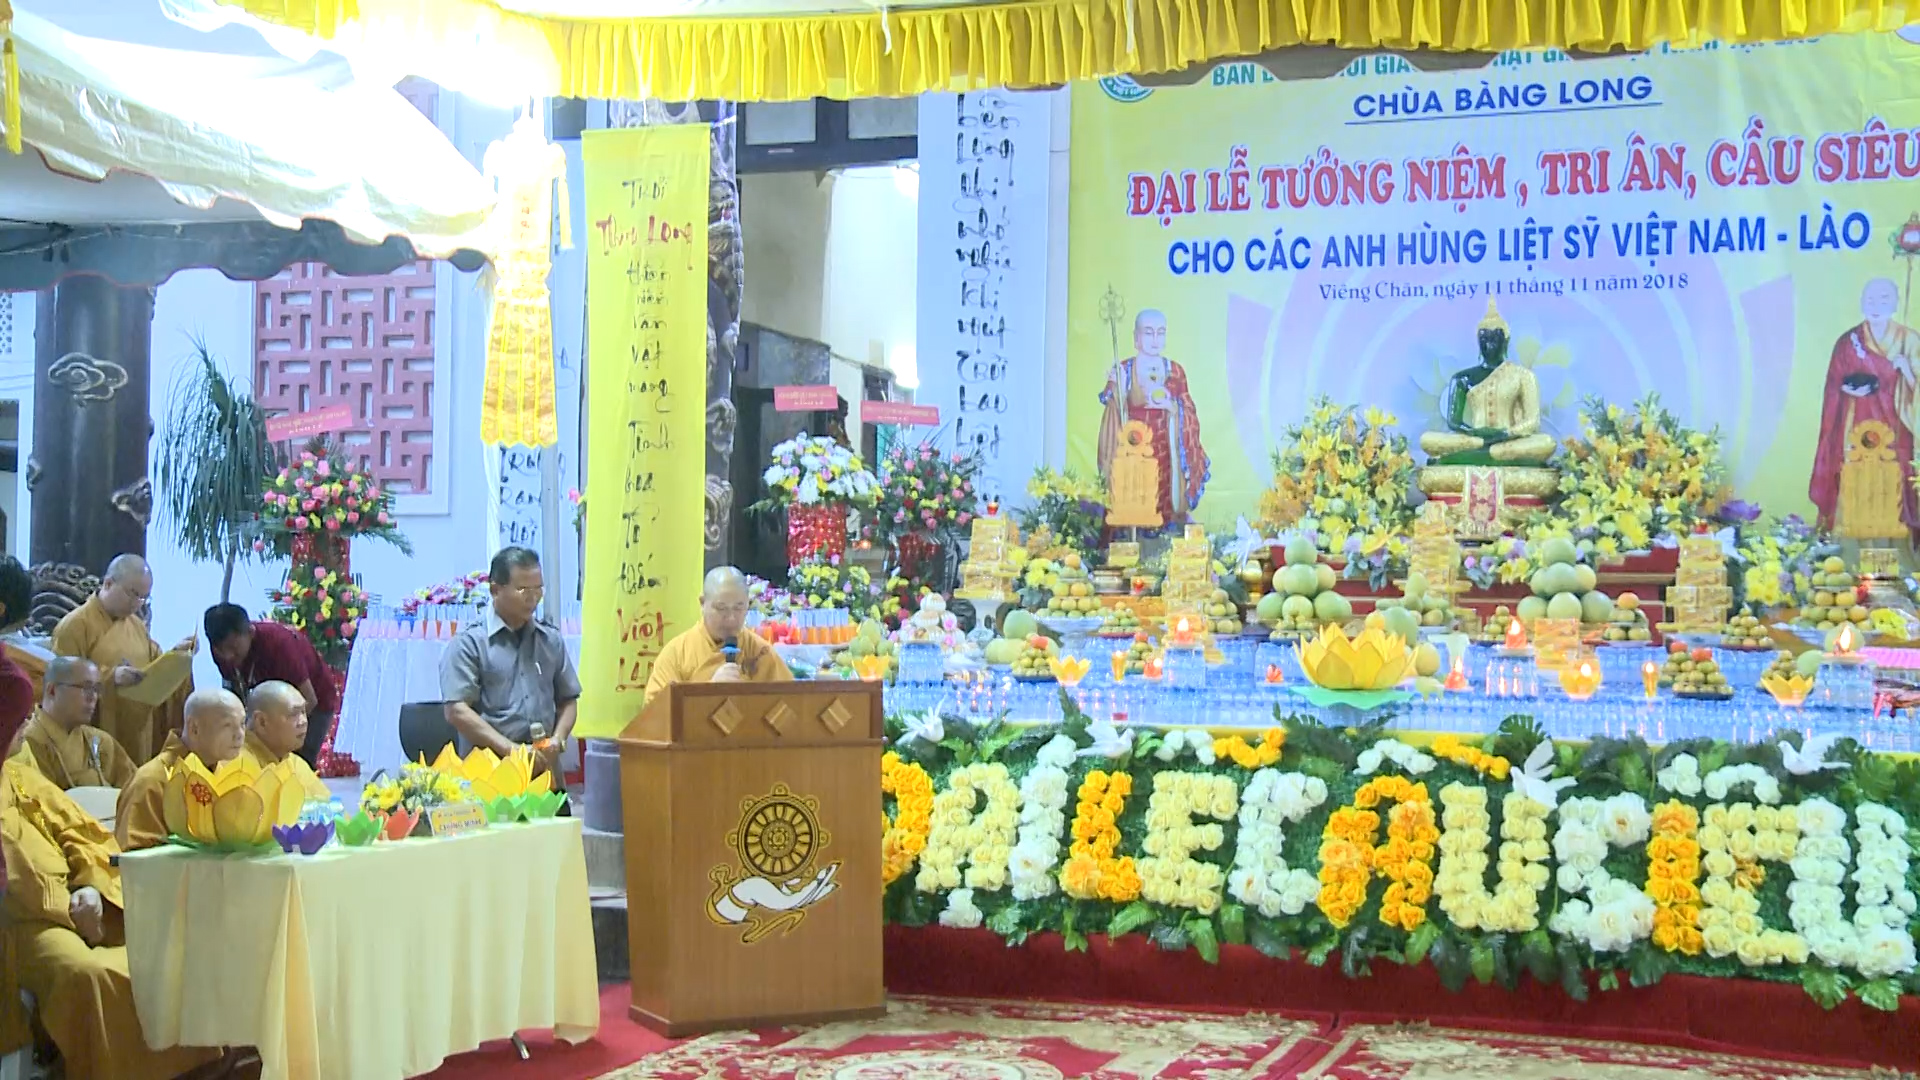 Phật giáo Việt Nam tại Lào tổ chức đại lễ cầu siêu anh hung liệt sỹ Việt Lào